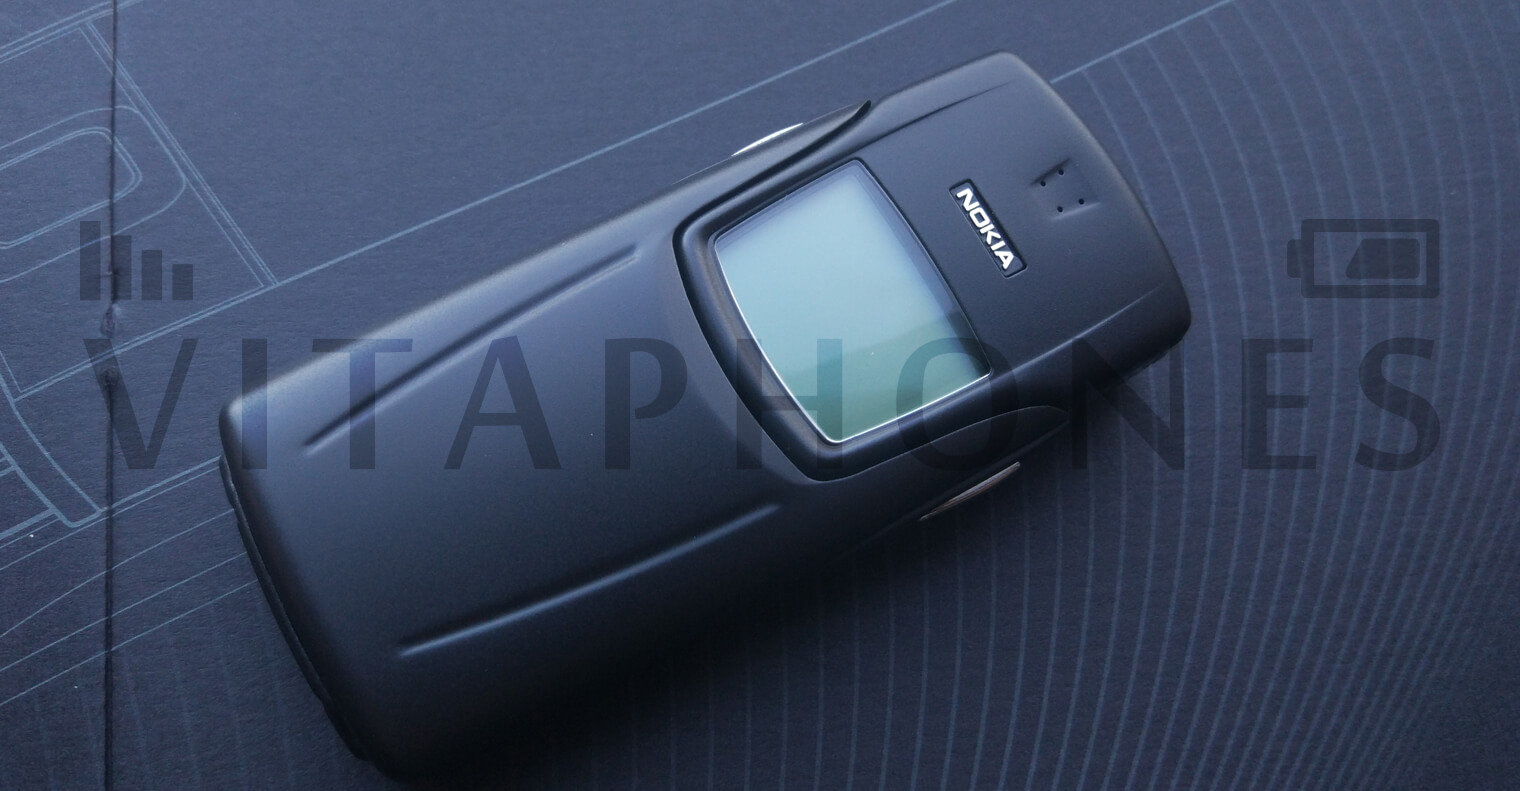 Nokia 8910 Black